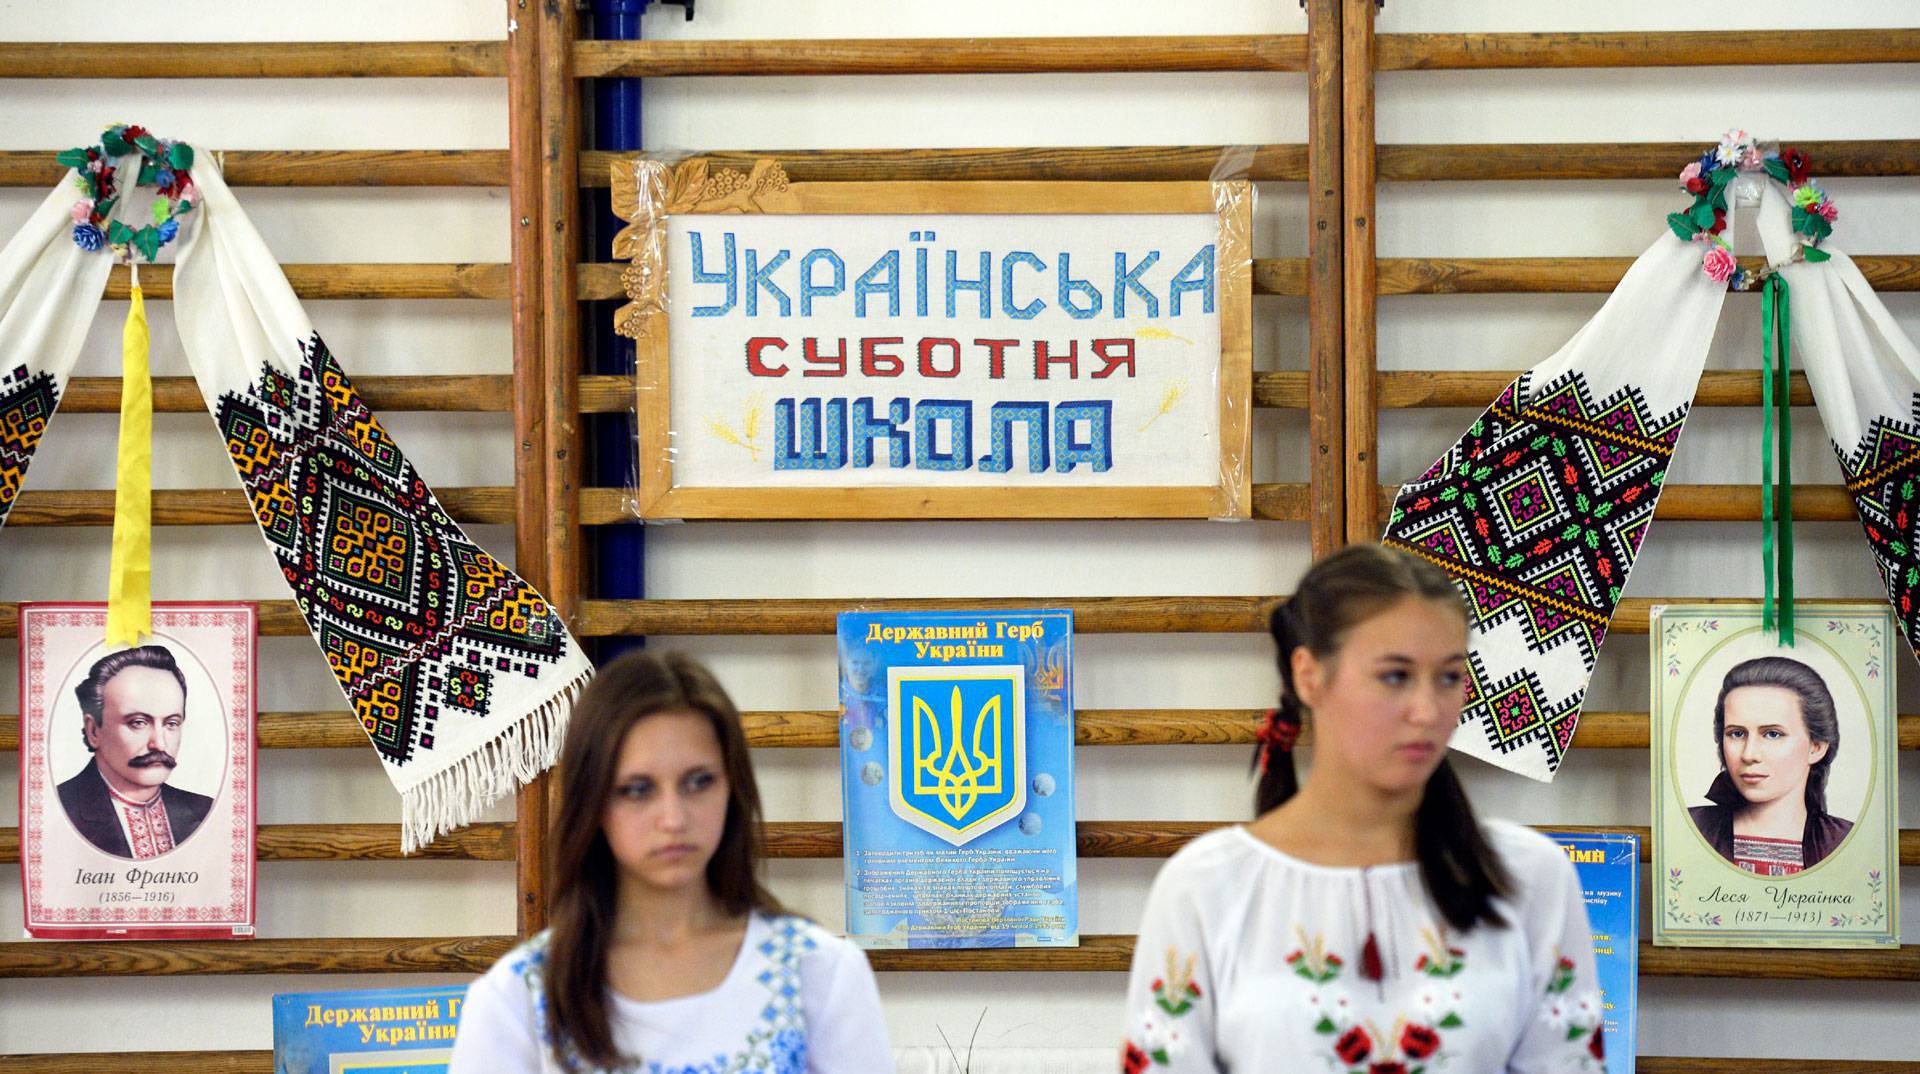 Dailystorm - Порошенко призвал школьников говорить на украинском на переменах